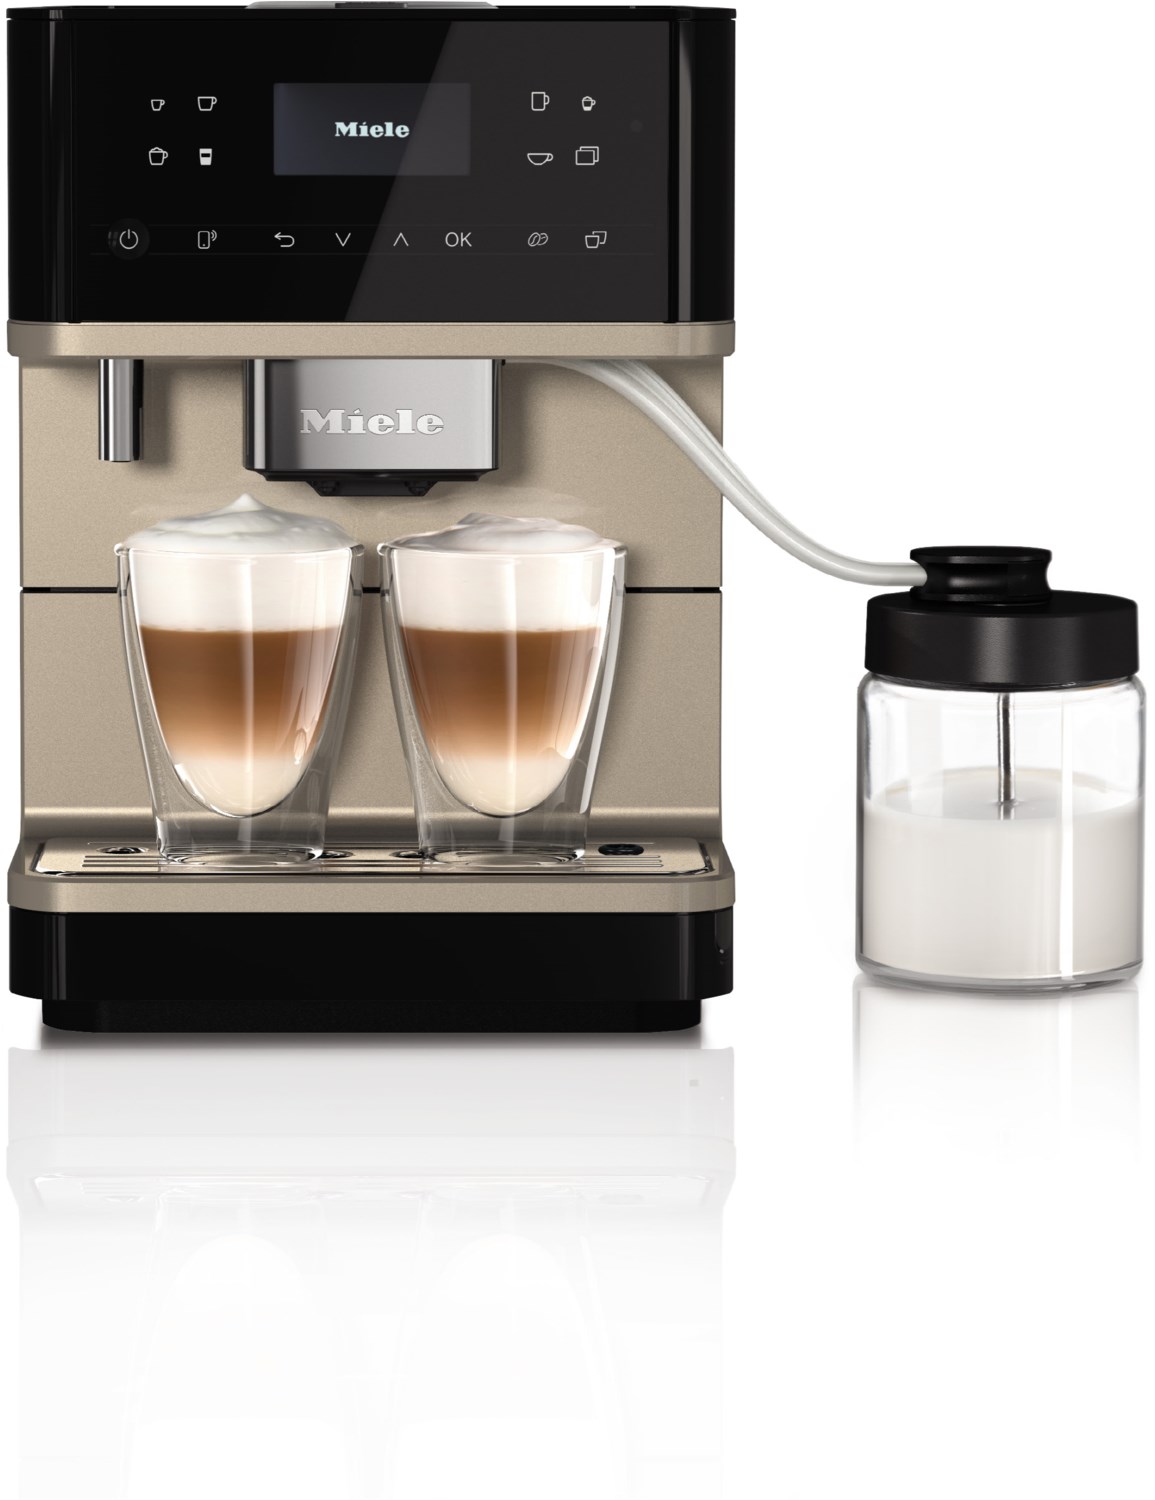 CM 6360 Kaffee-Vollautomat obsidianschwarz/cleansteel von Miele